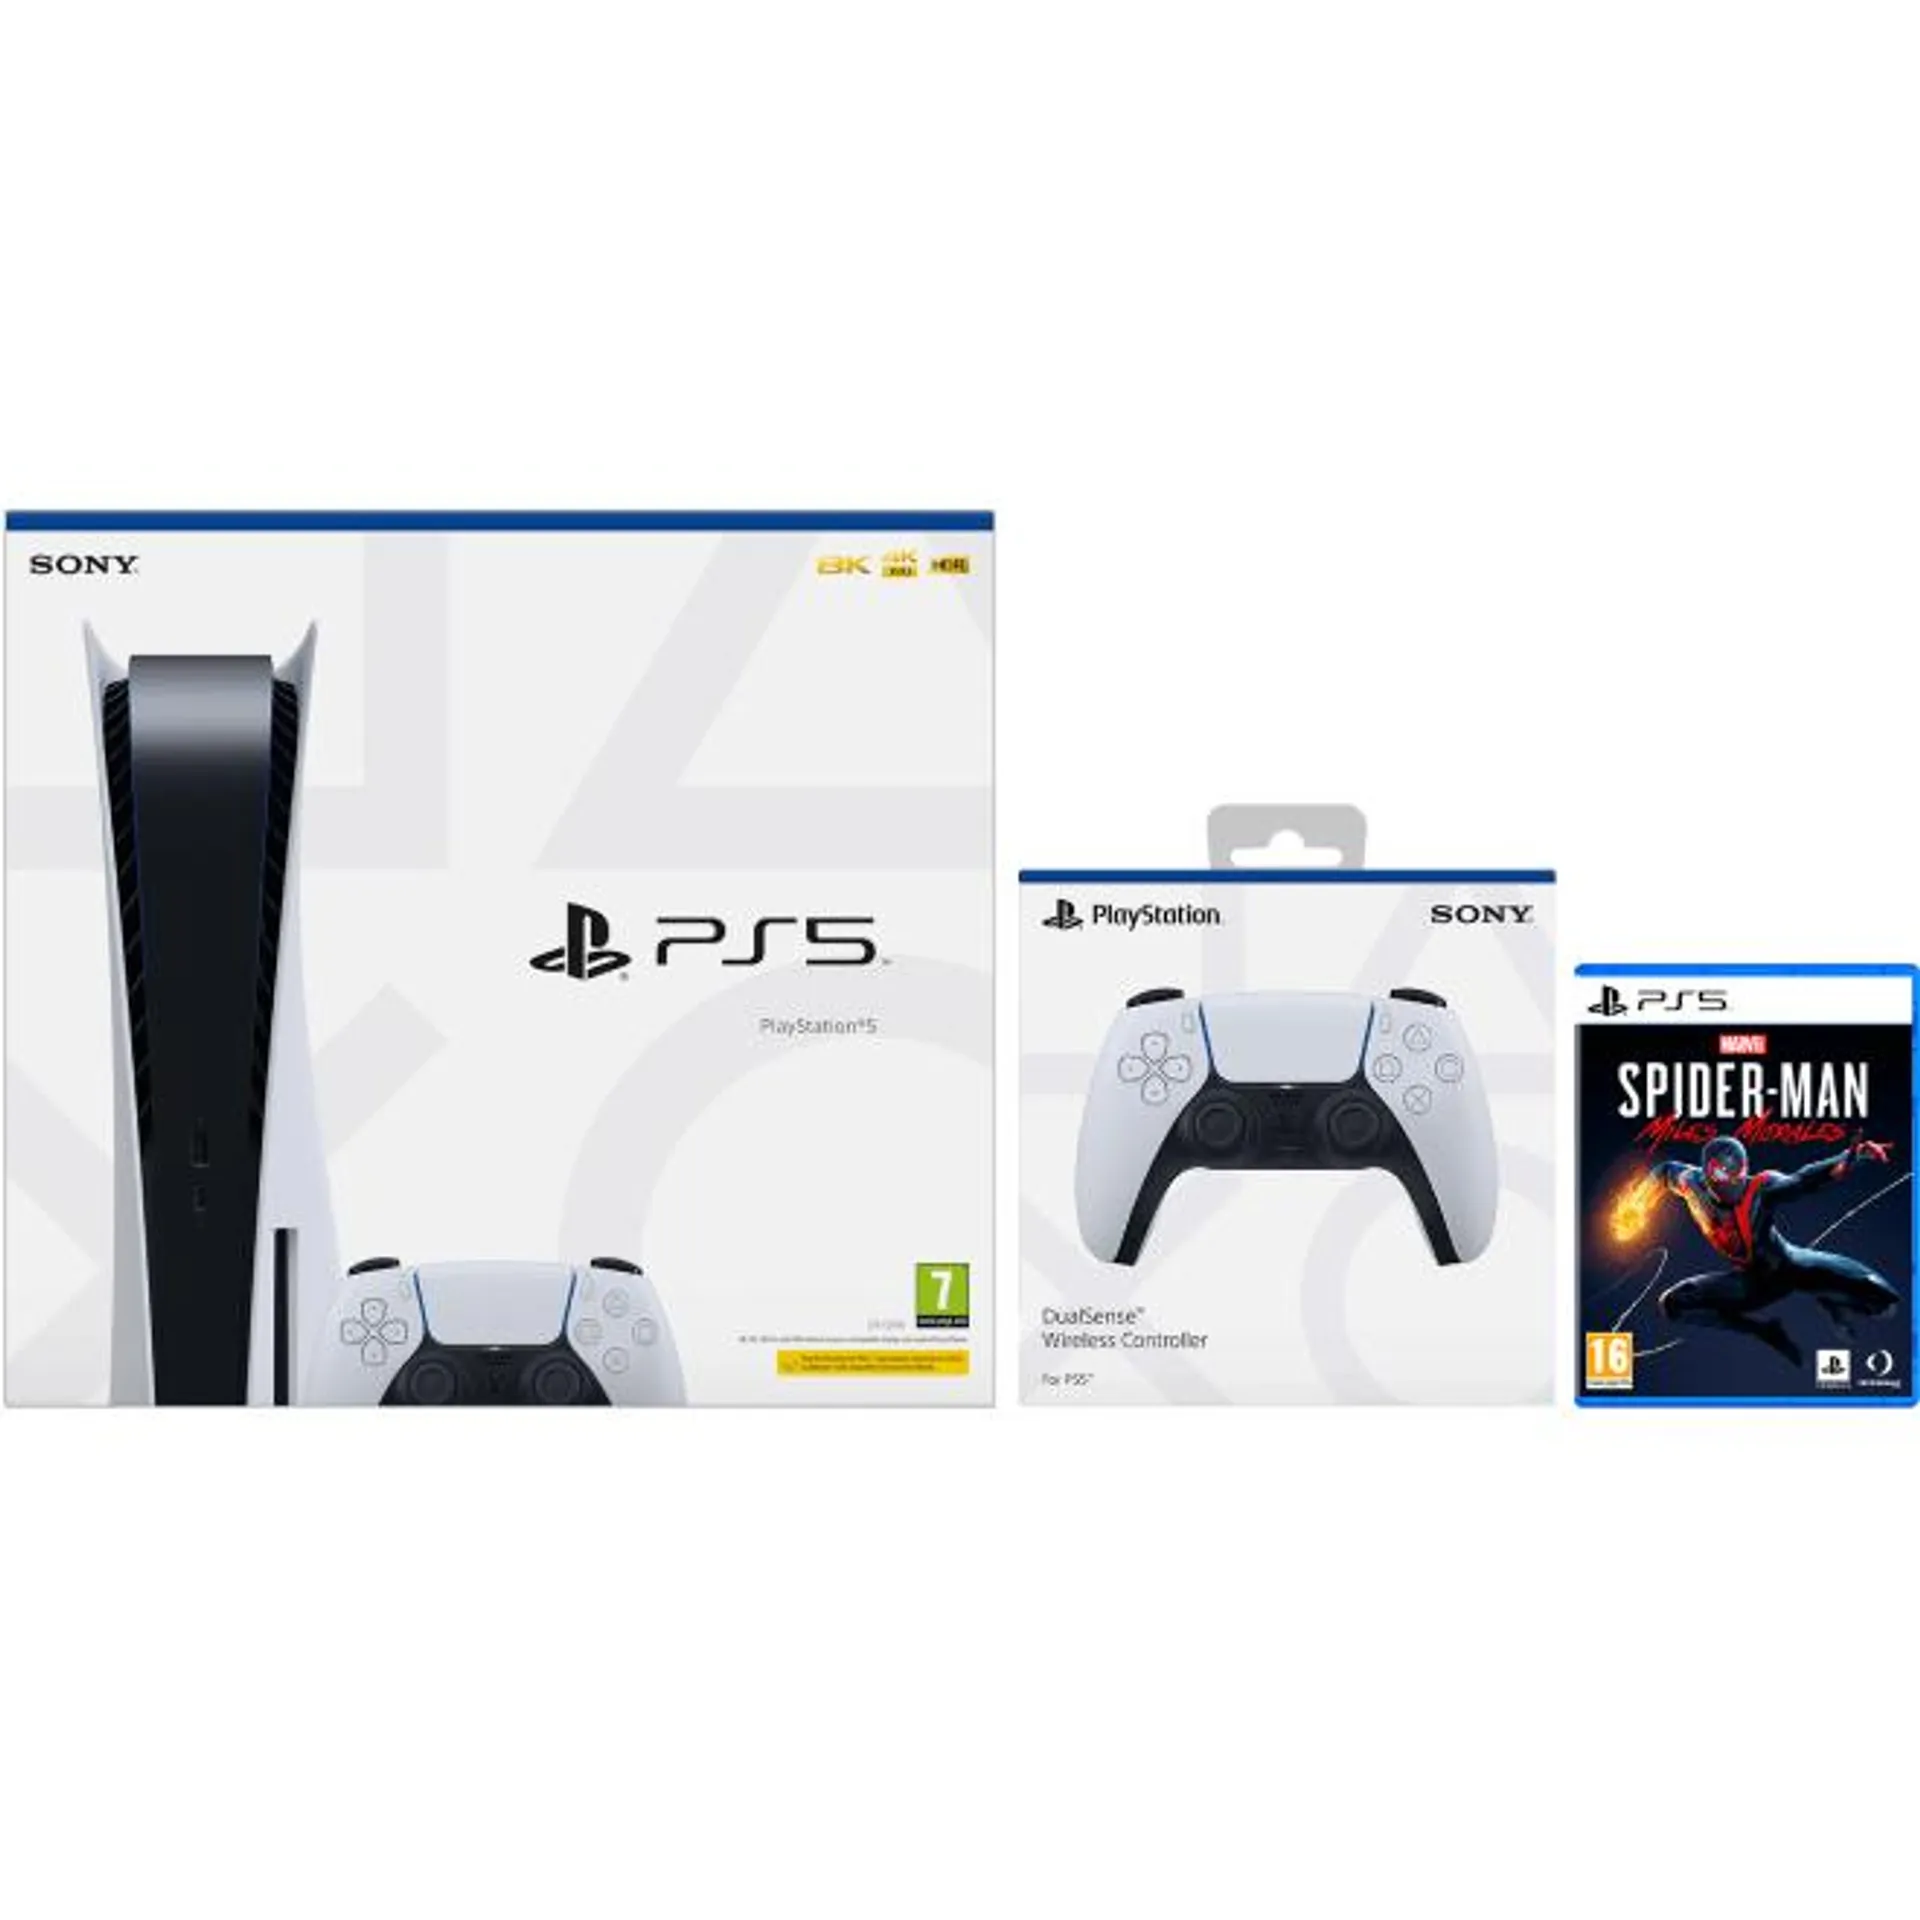 PlayStation PS5 stand con Dualsense y Spiderman